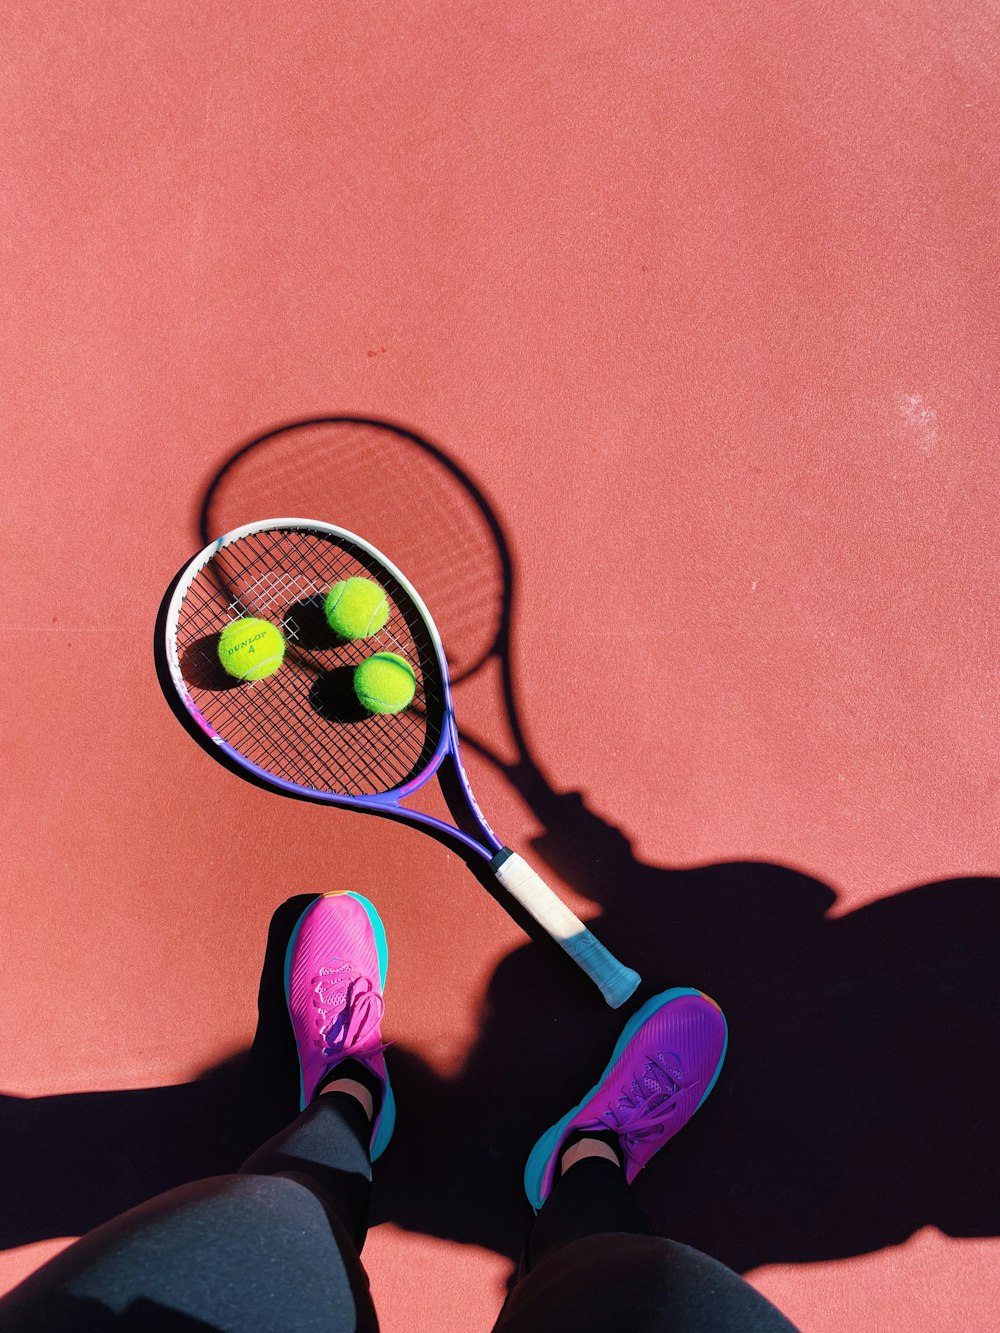 Une personne debout sur un court de tennis tenant une raquette de tennis  photo – Photo Malibu Gratuite sur Unsplash